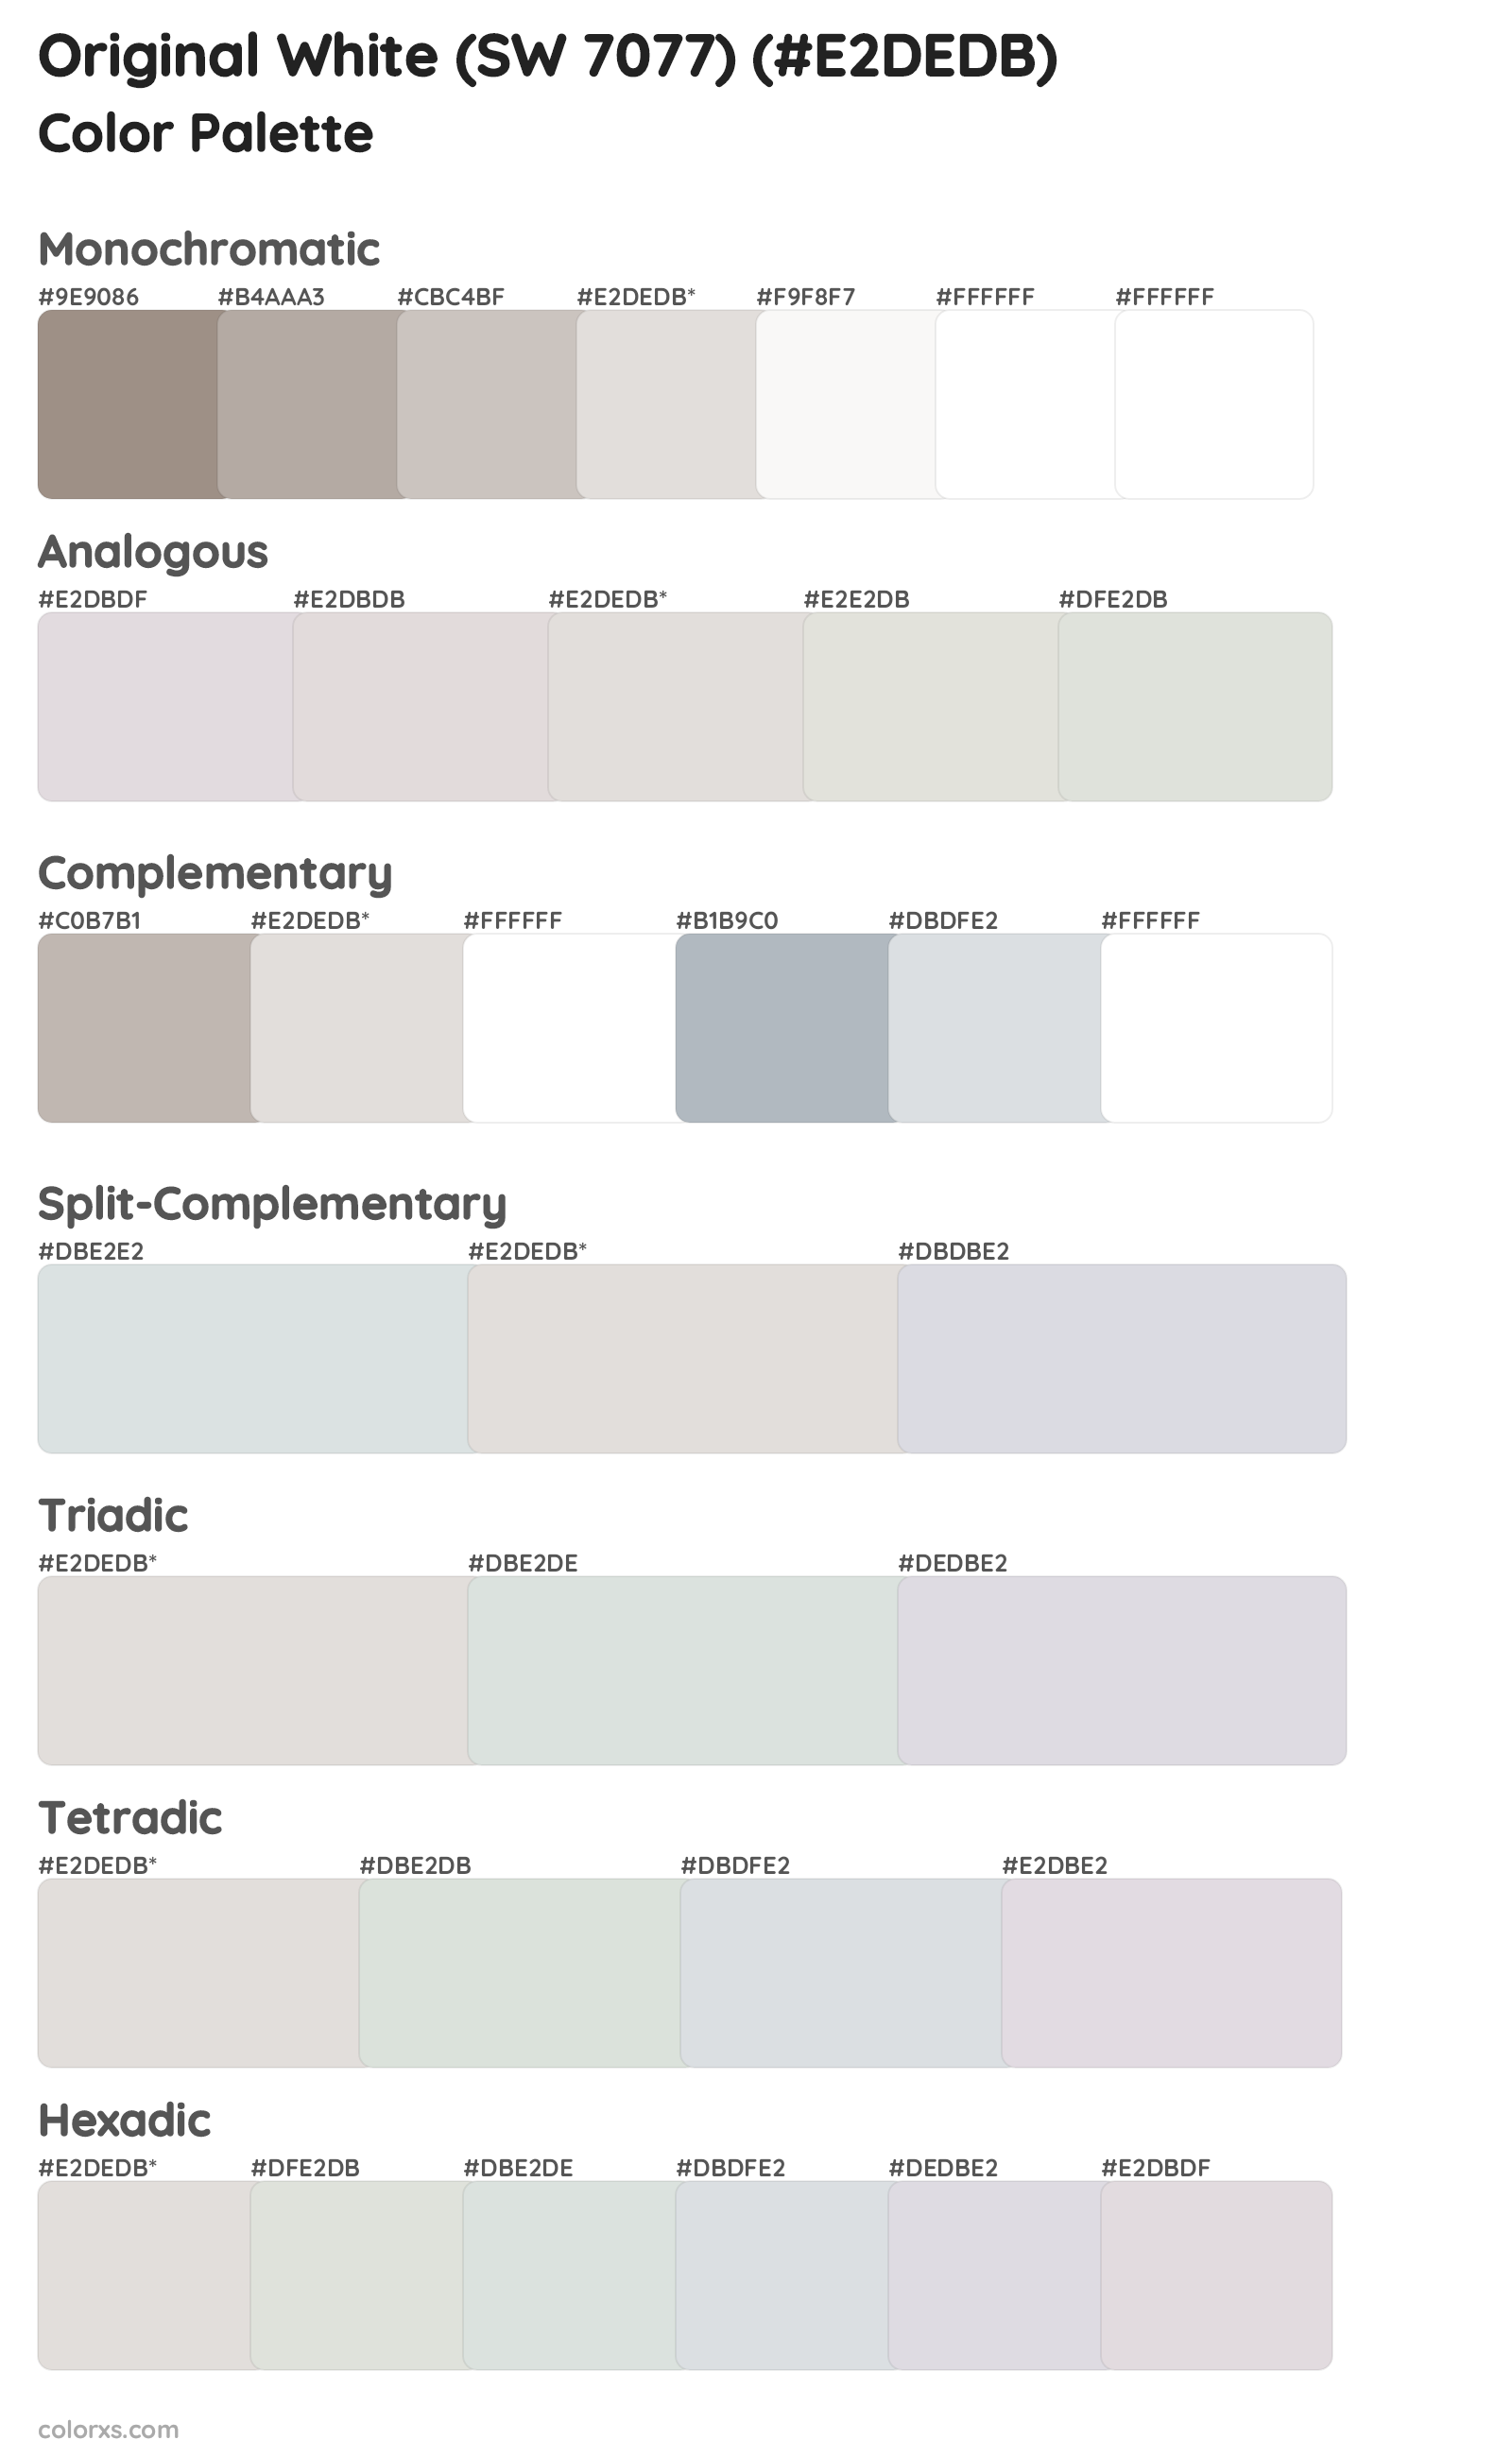 Original White (SW 7077) Color Scheme Palettes